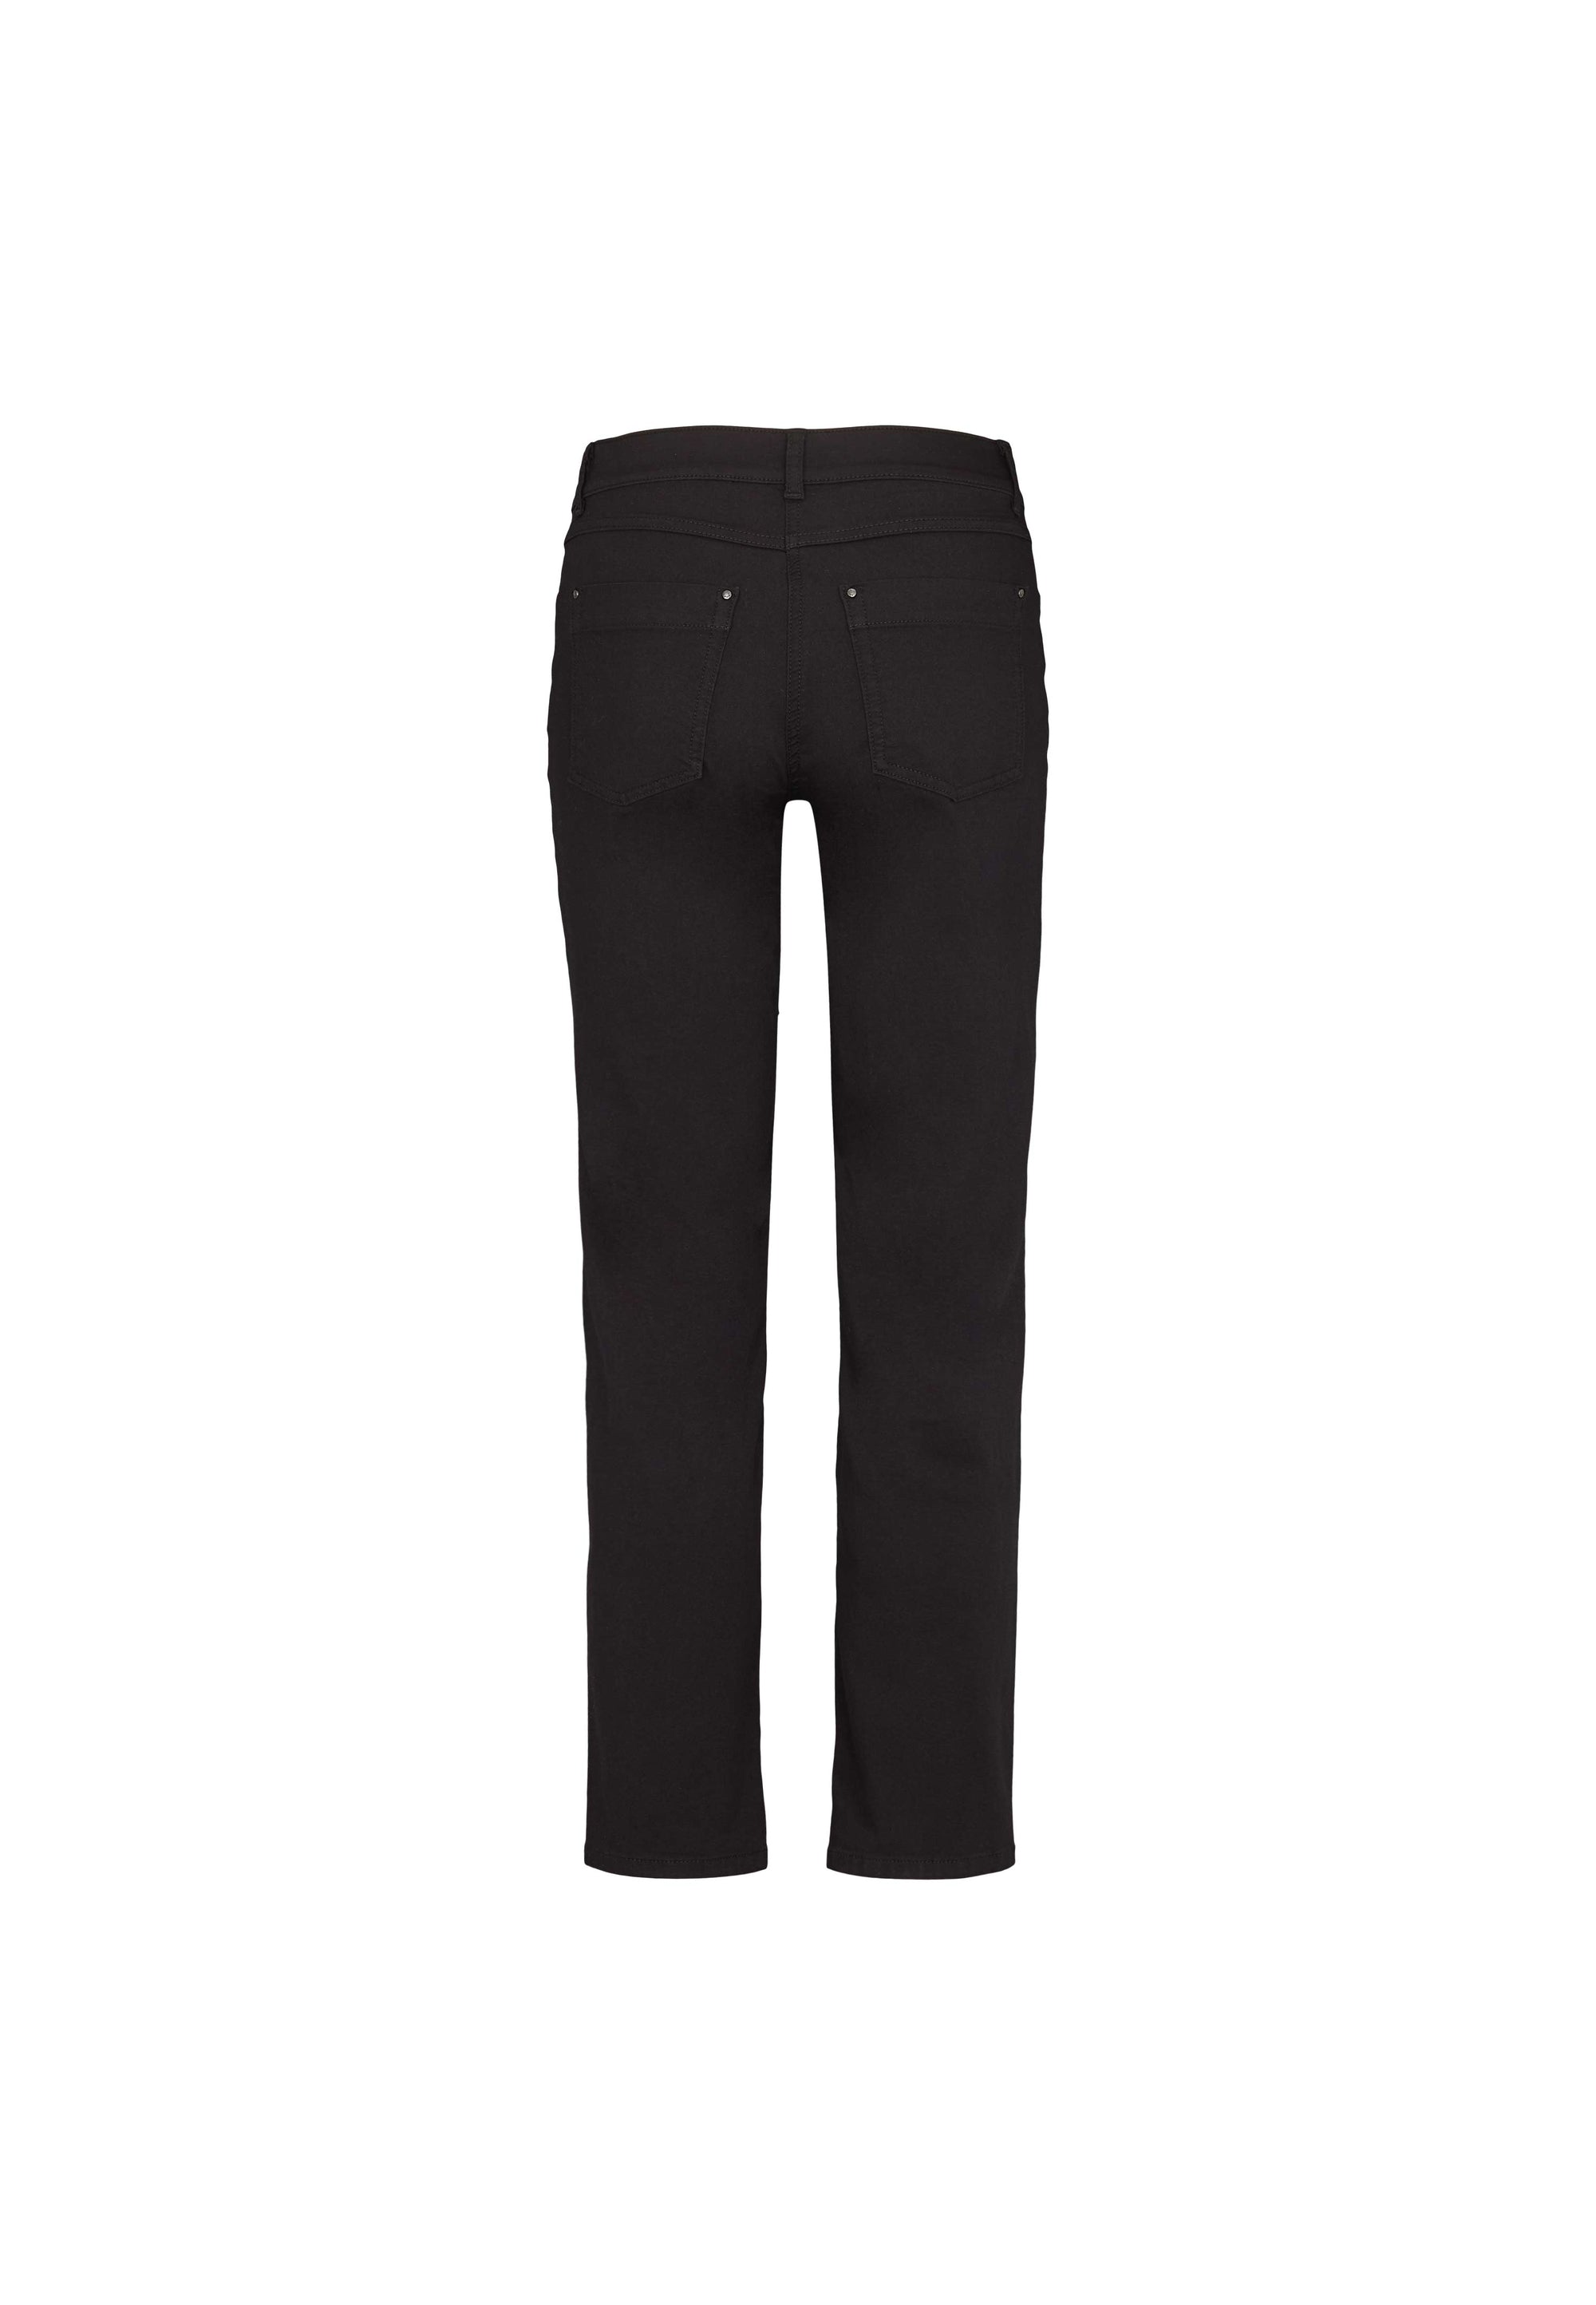 LAURIE  Charlotte Regular - Short Length Trousers REGULAR 99100 Black